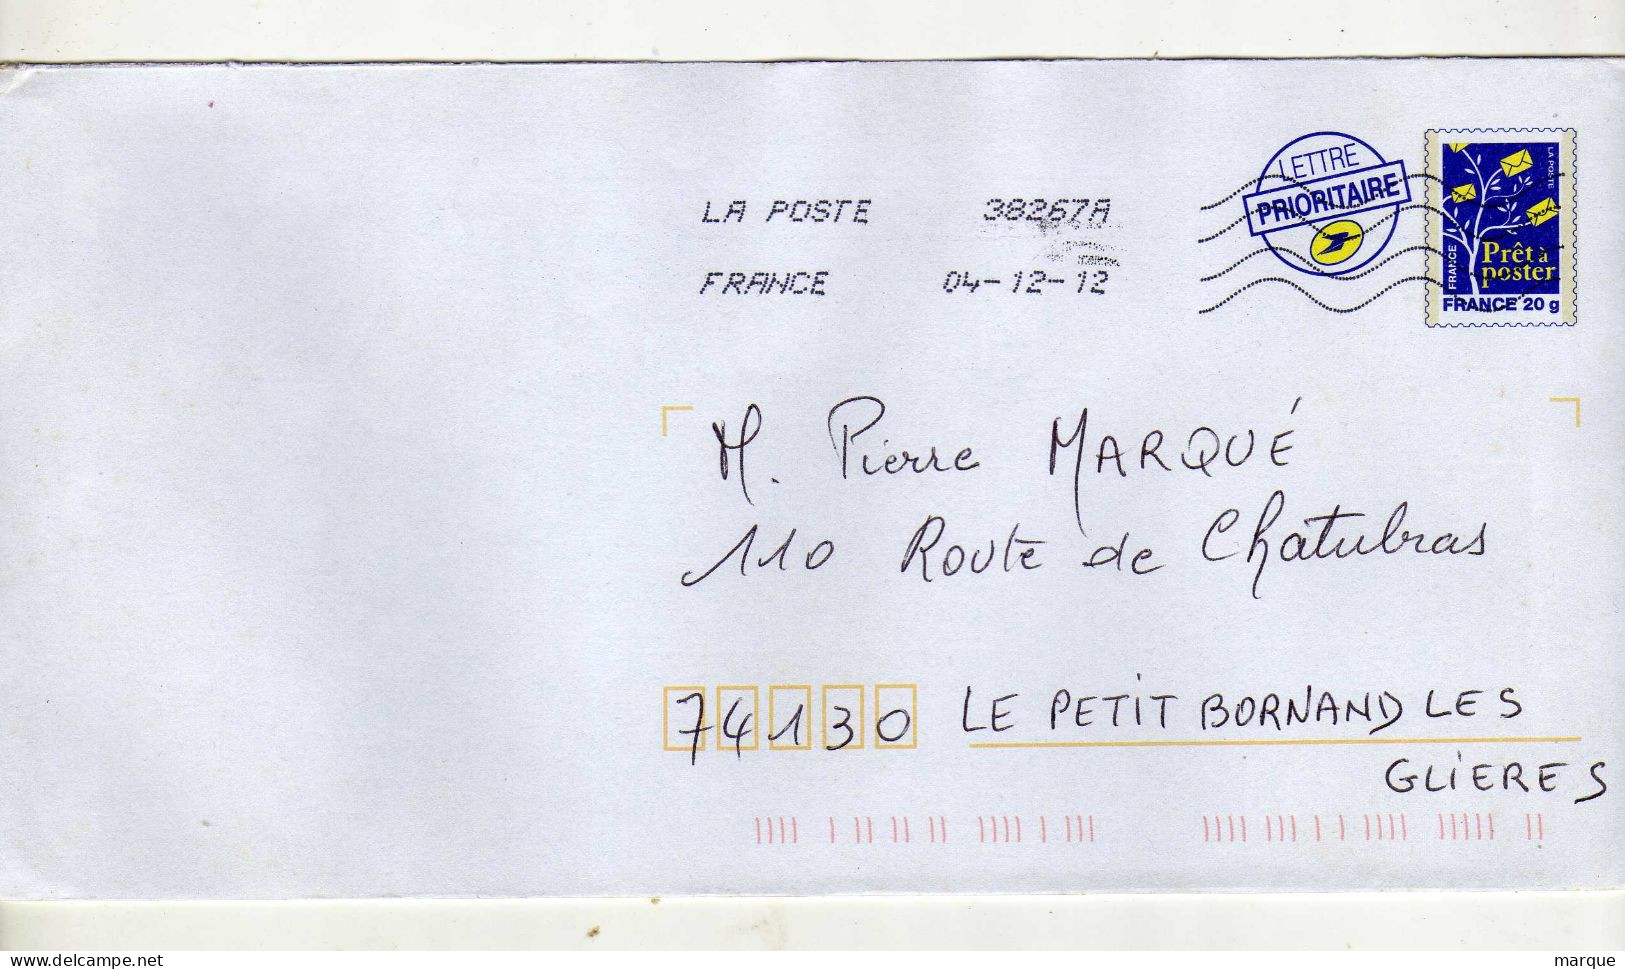 Enveloppe FRANCE Prêt à Poster Lettre Prioritaire 20g Oblitération LA POSTE 38267A 04/12/2012 - Prêts-à-poster: Repiquages /Logo Bleu